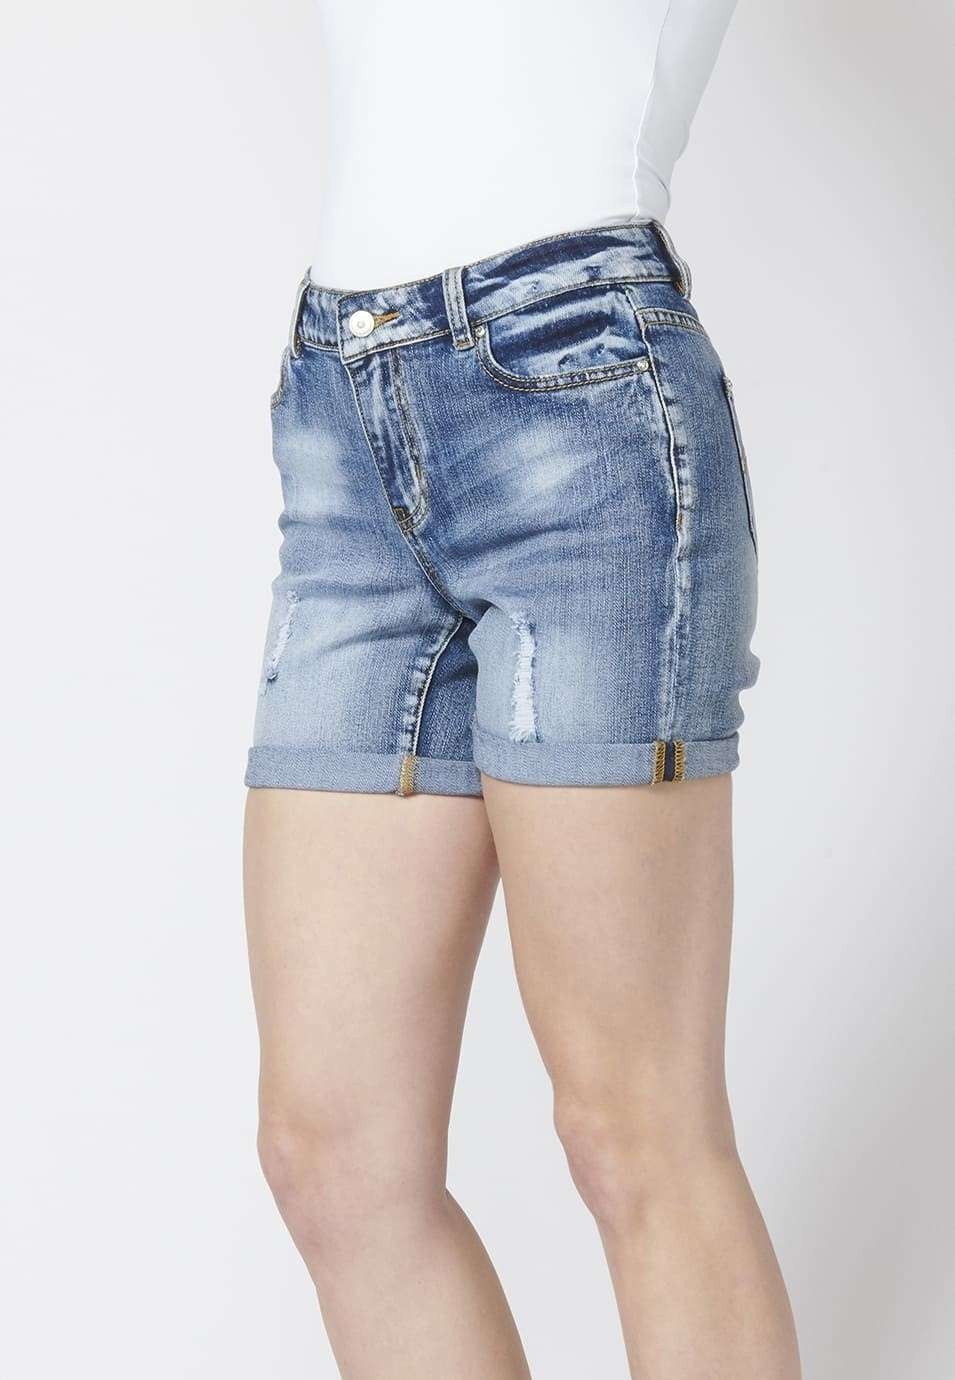 Pantalón corto mujer denim short tejano elástico encima rodilla detalles con rotos